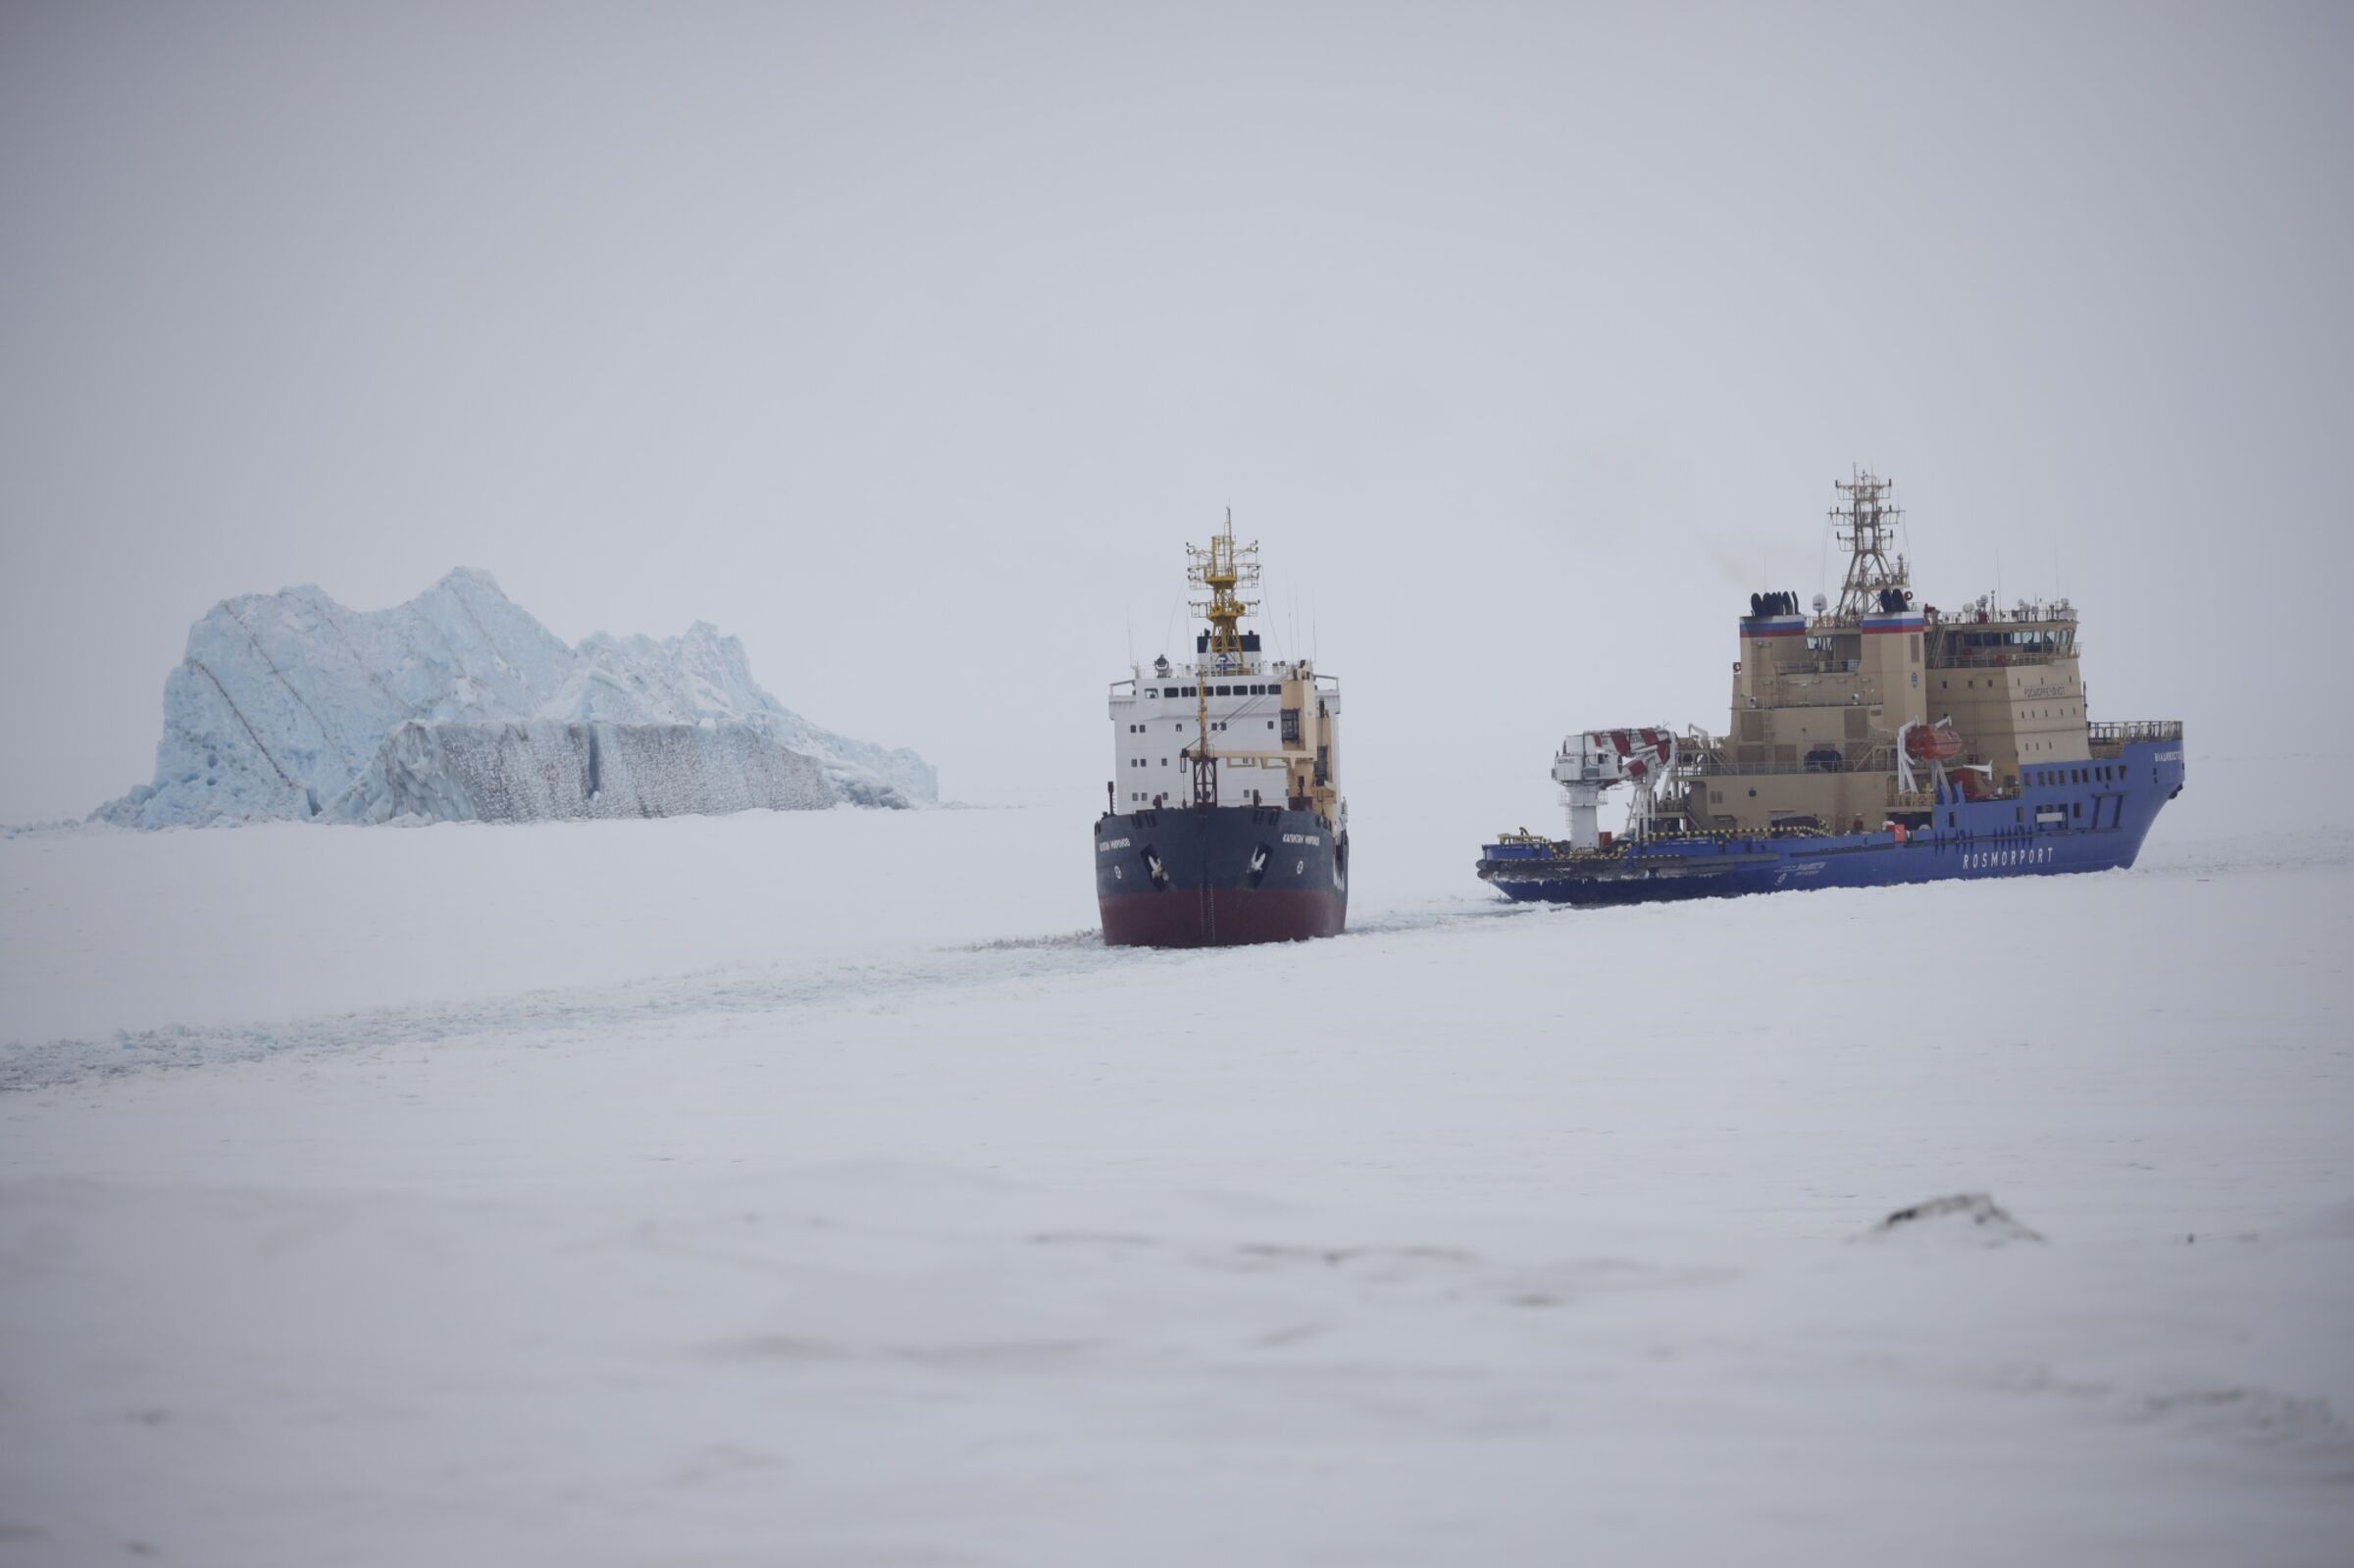 Egy jégtörő képe, amely utat nyit egy teherhajónak.  Jéghegy van a háttérben.  A táj csupa hó és jég, az ég ködös.